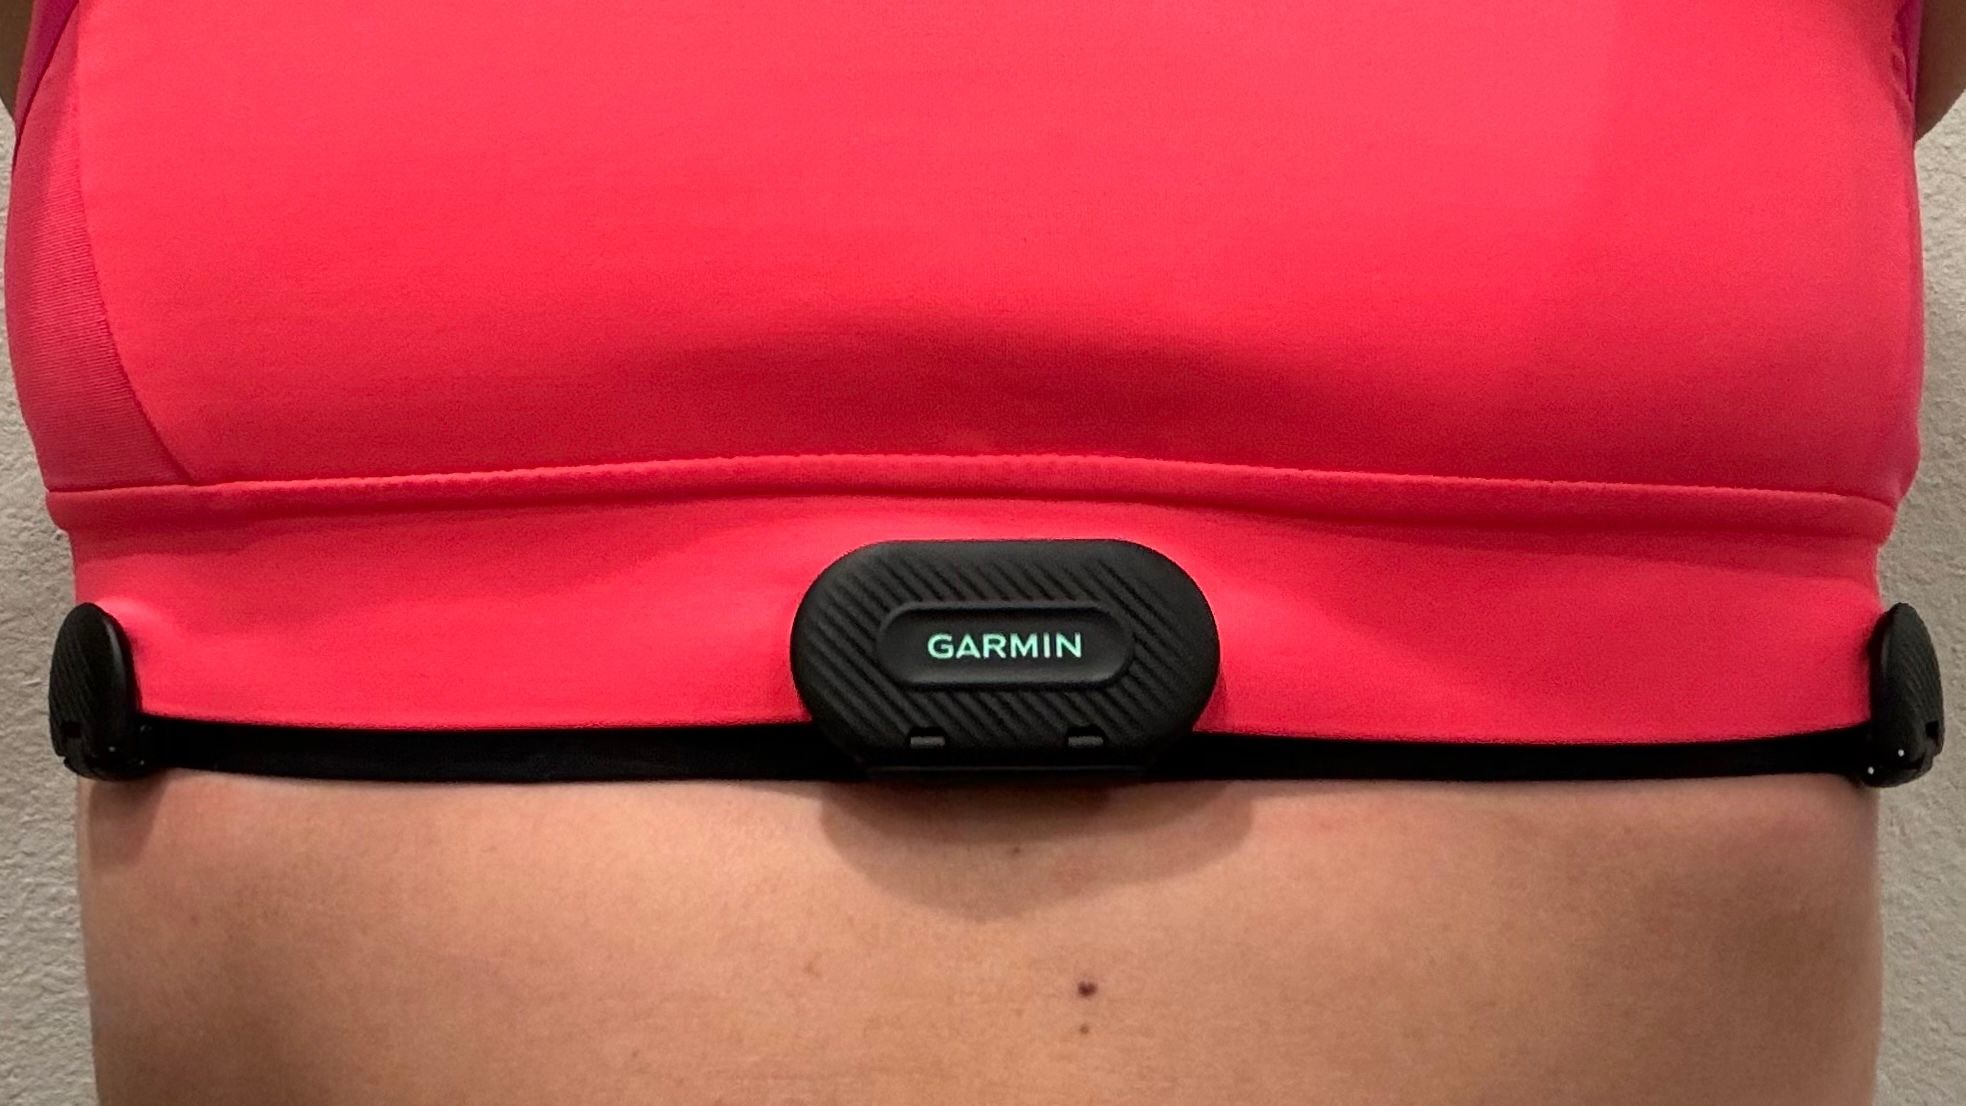 Garmin Sensor de Frecuencia Cardíaca + Banda Pulsómetro Mujer - HRM-Fit™